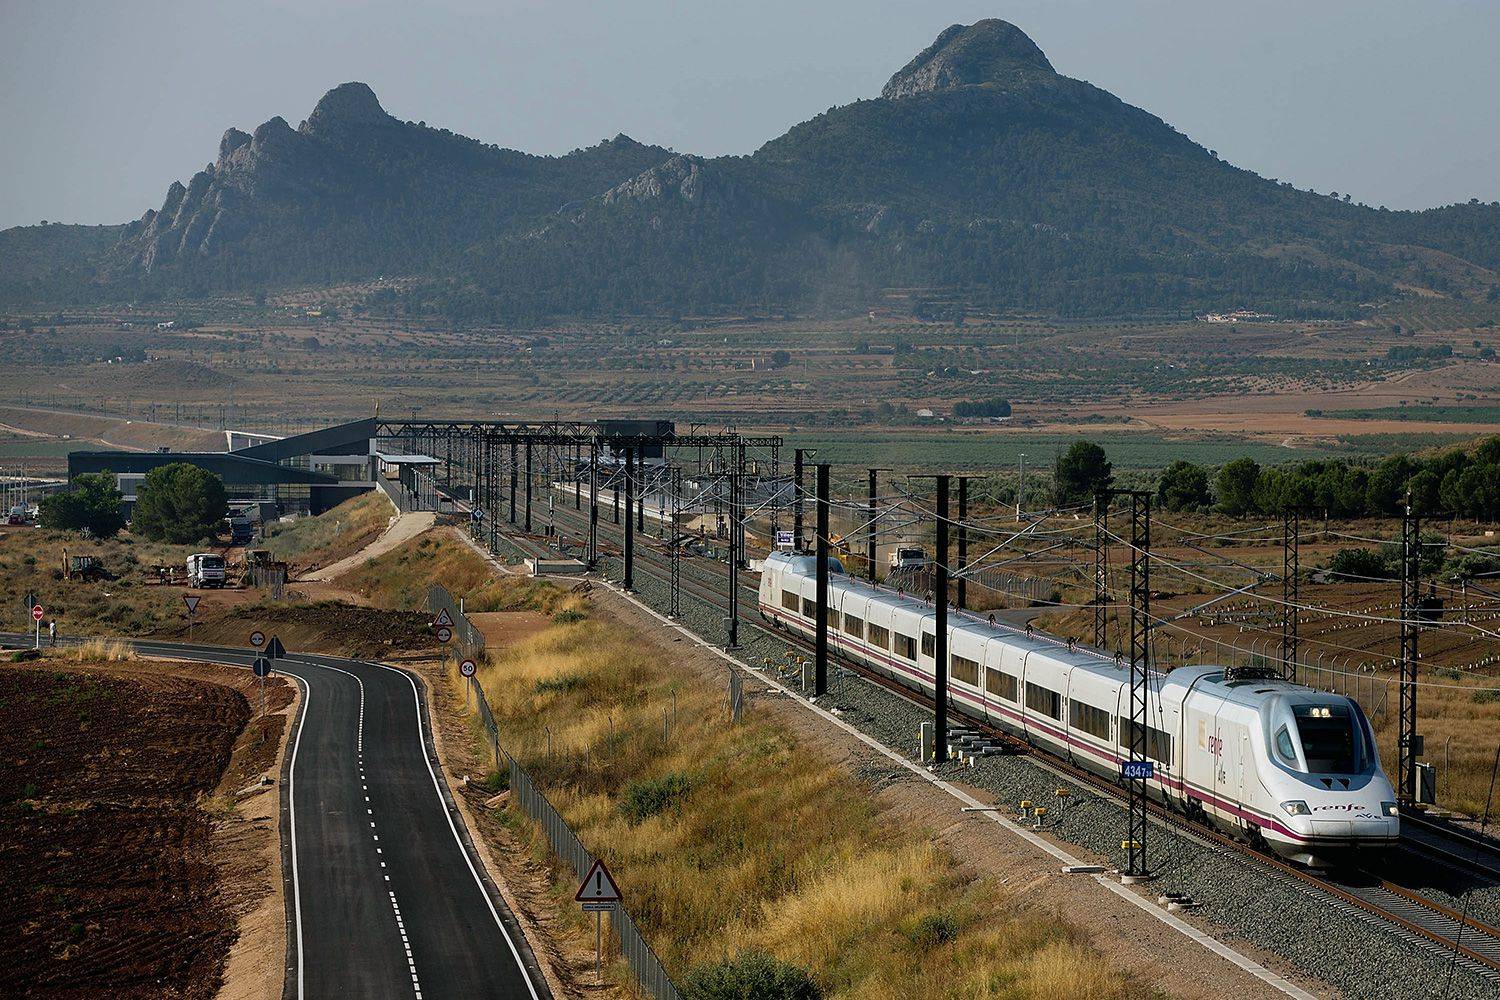 Железные дороги в испании: типы поездов, классы обслуживания, тарифы и покупка билетов онлайн